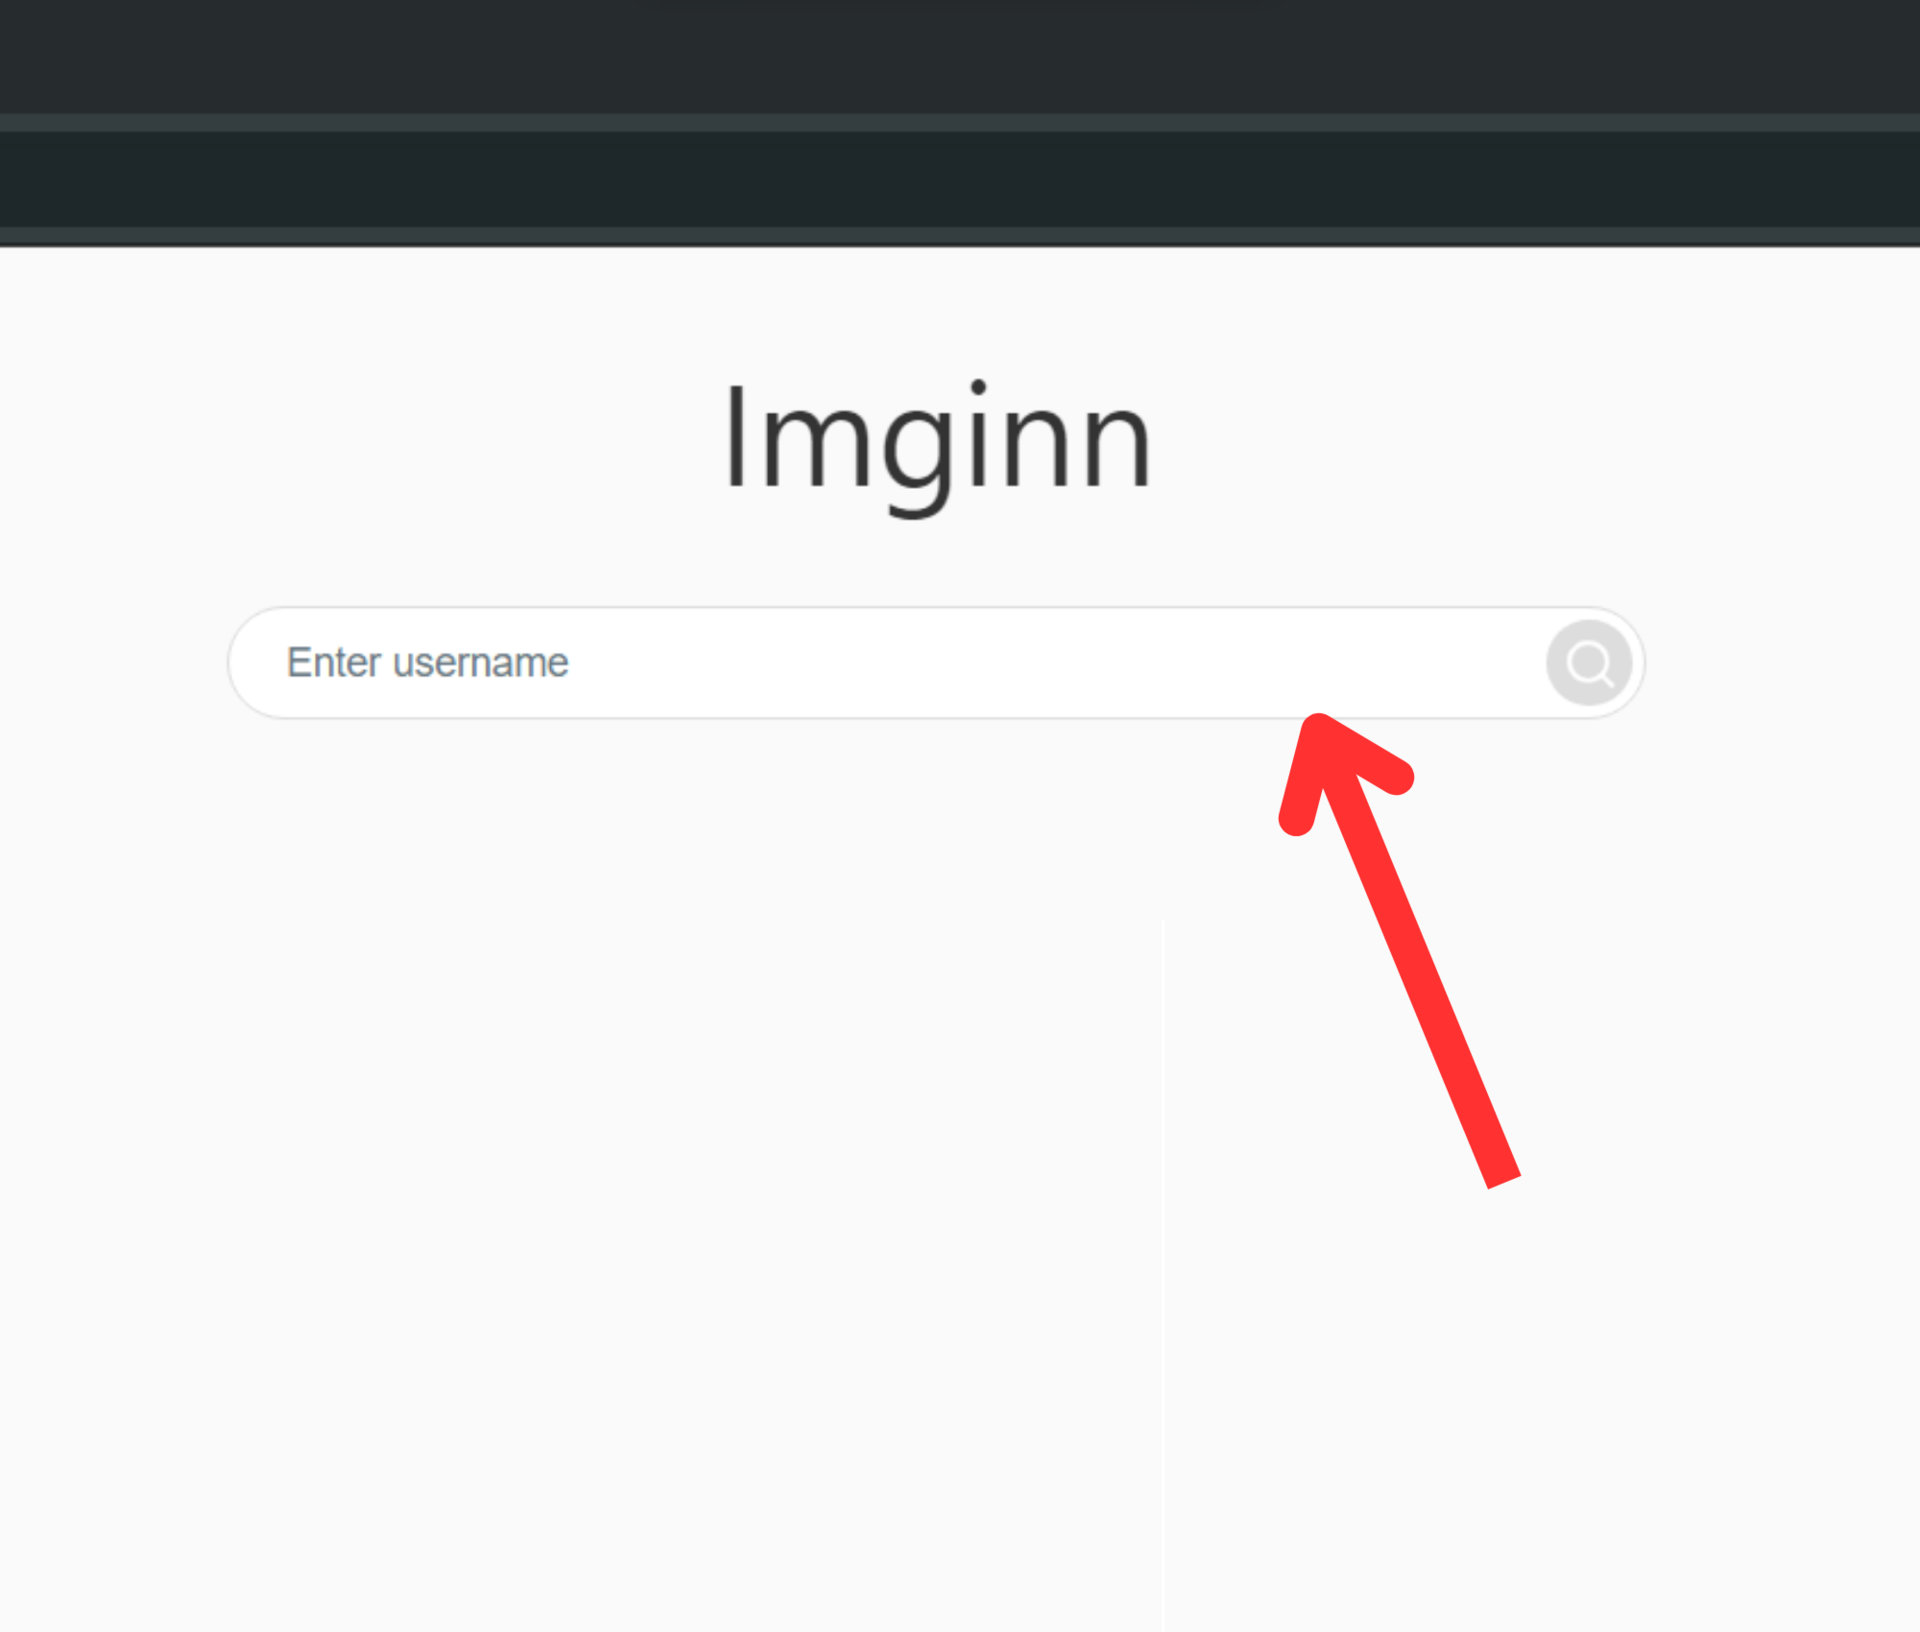 imginn website enter username box